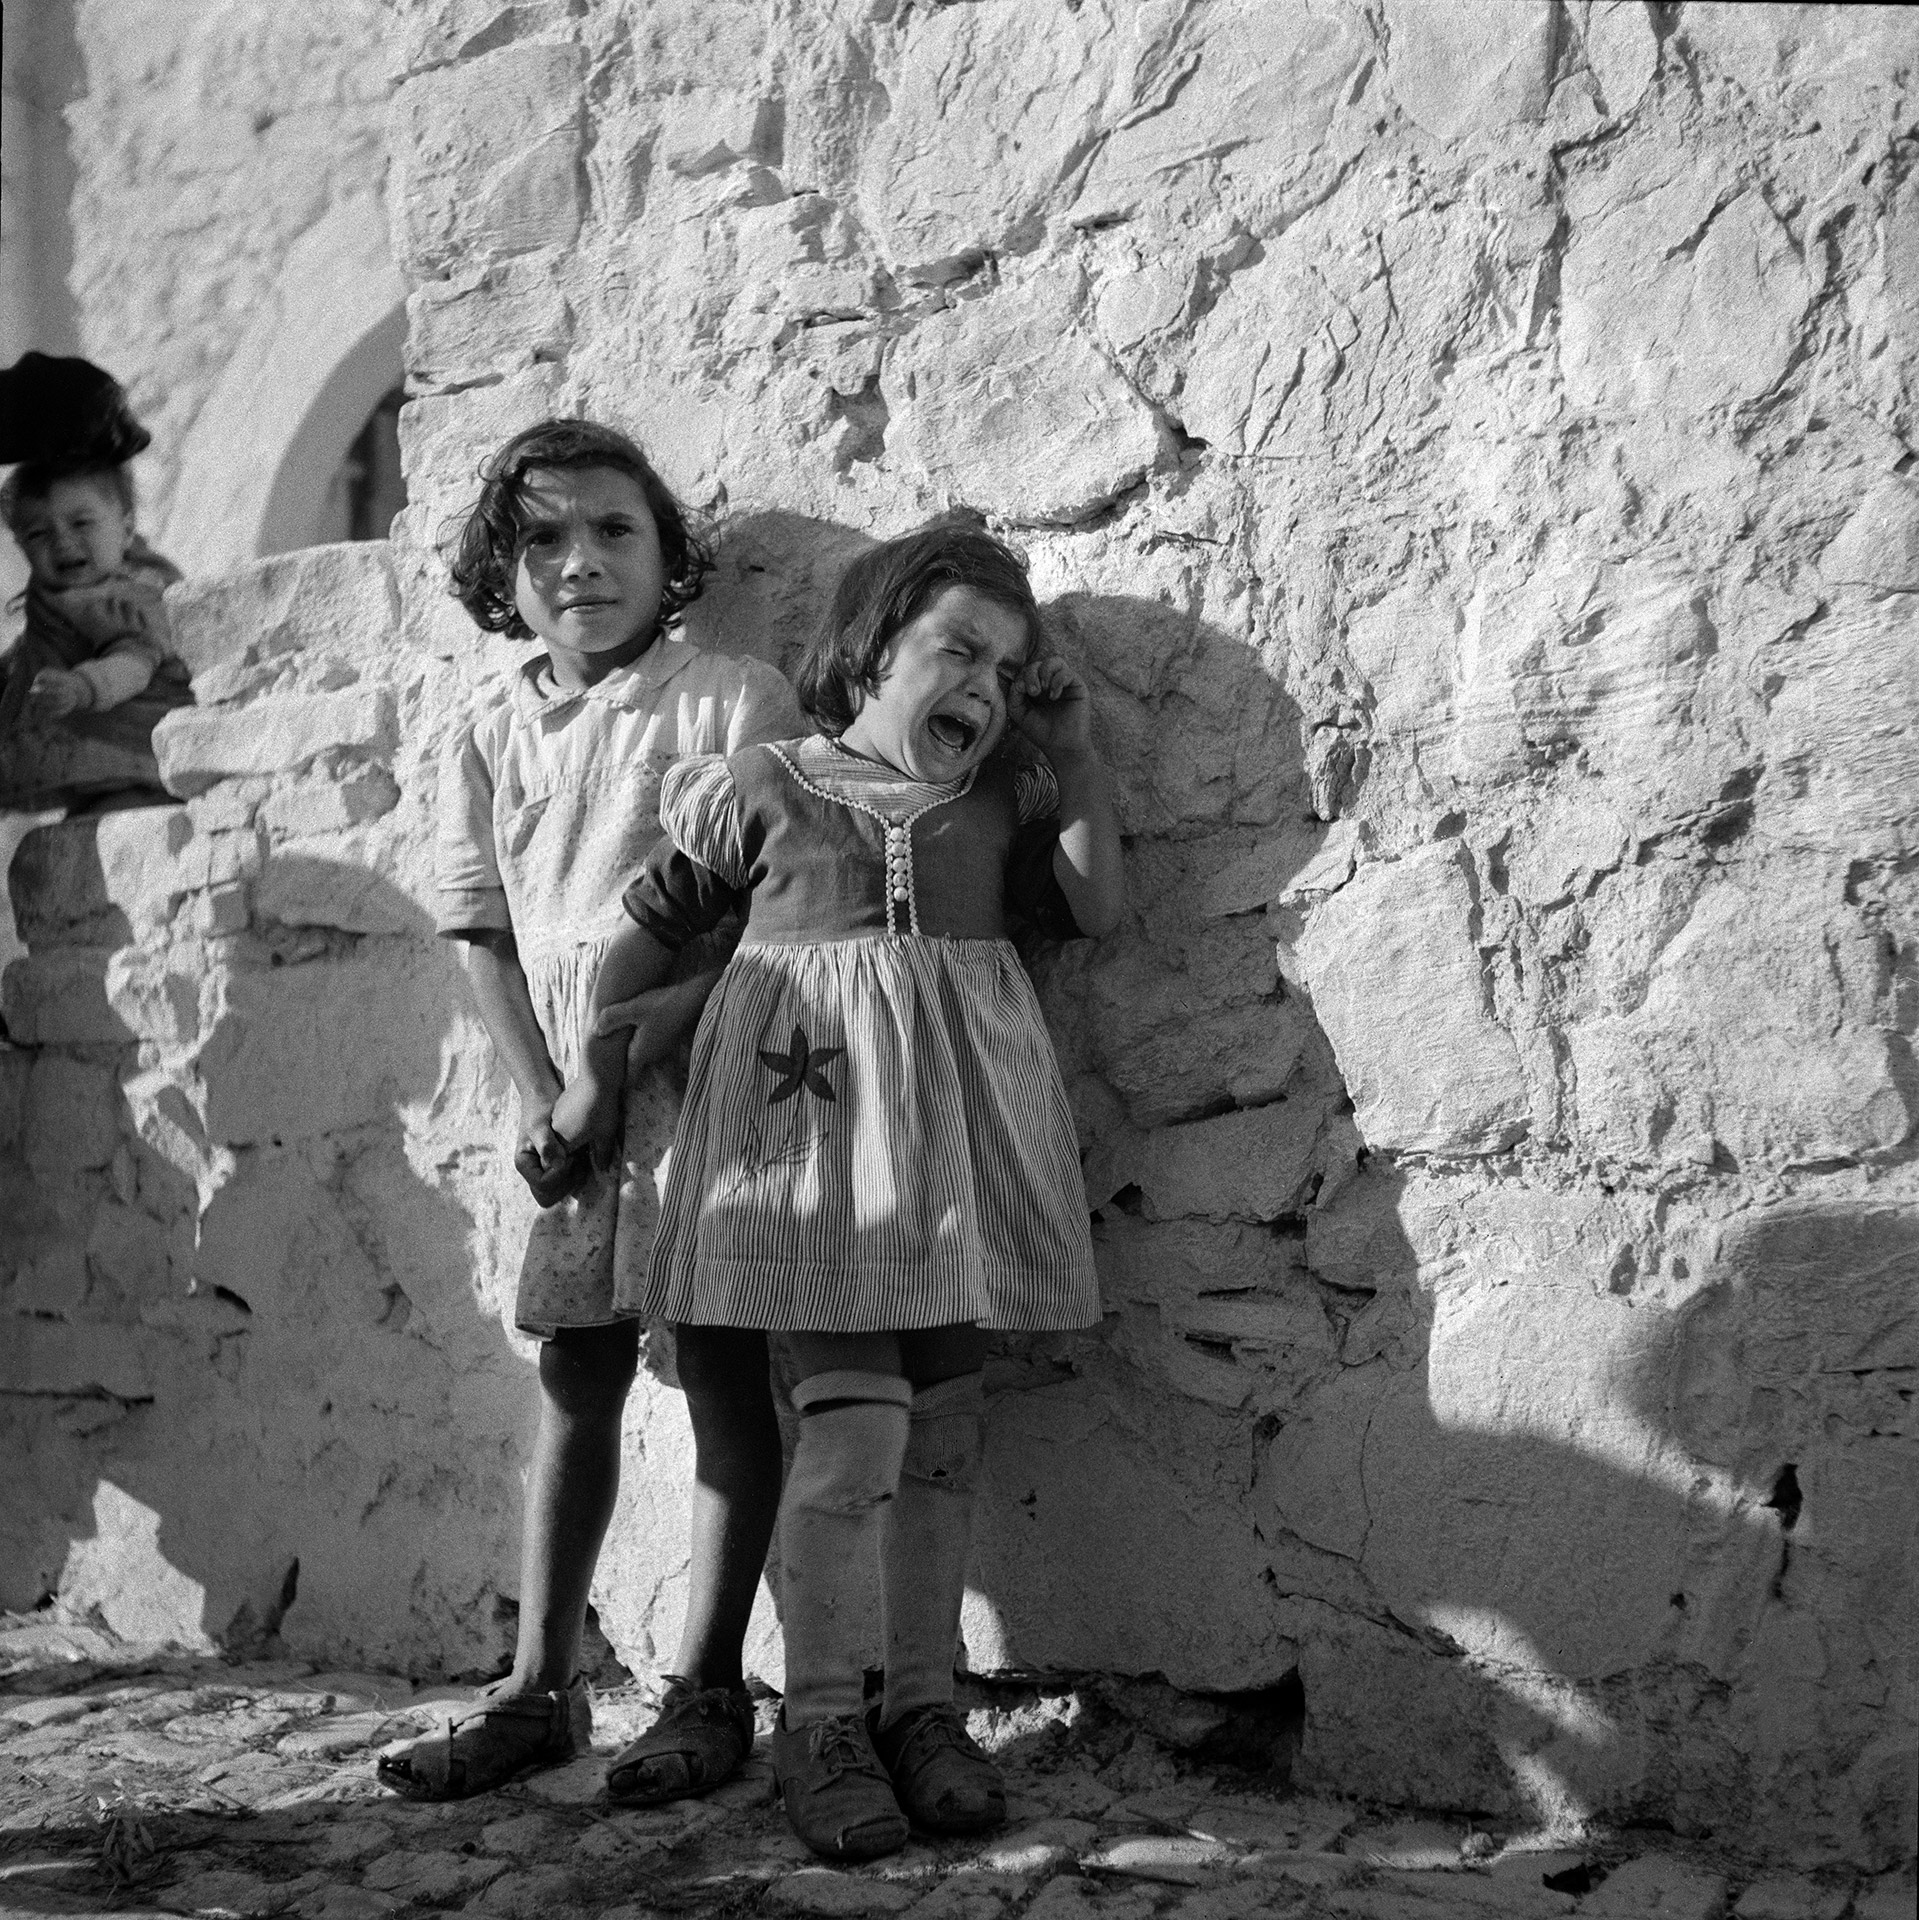 Crying Girl, Italy 1947, by Tony Vaccaro